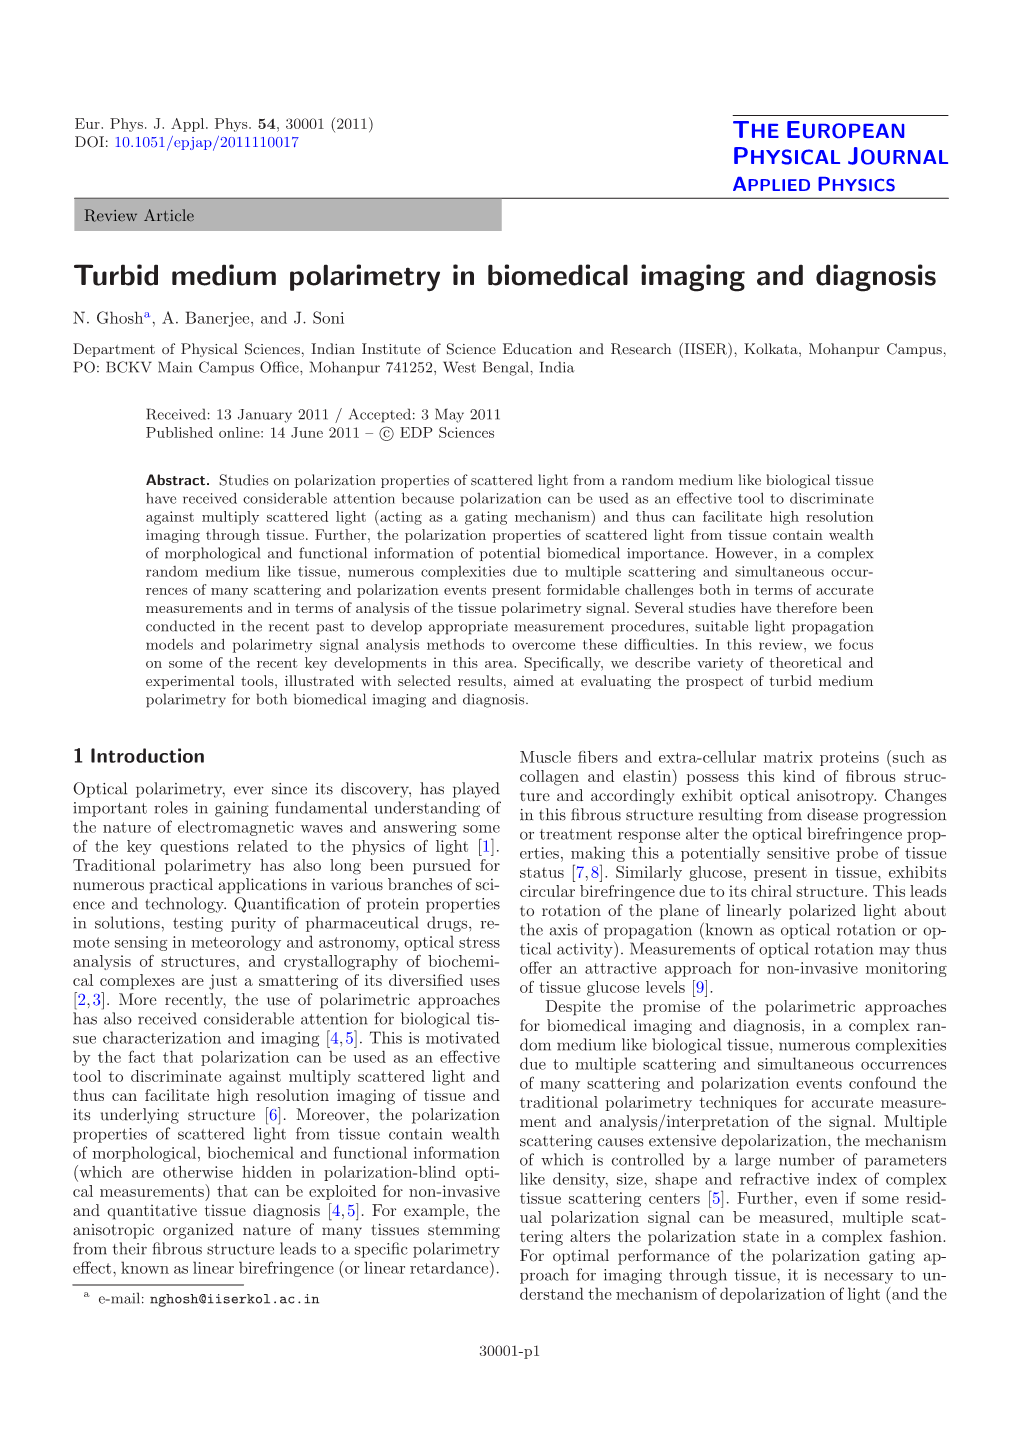 Turbid Medium Polarimetry in Biomedical Imaging and Diagnosis